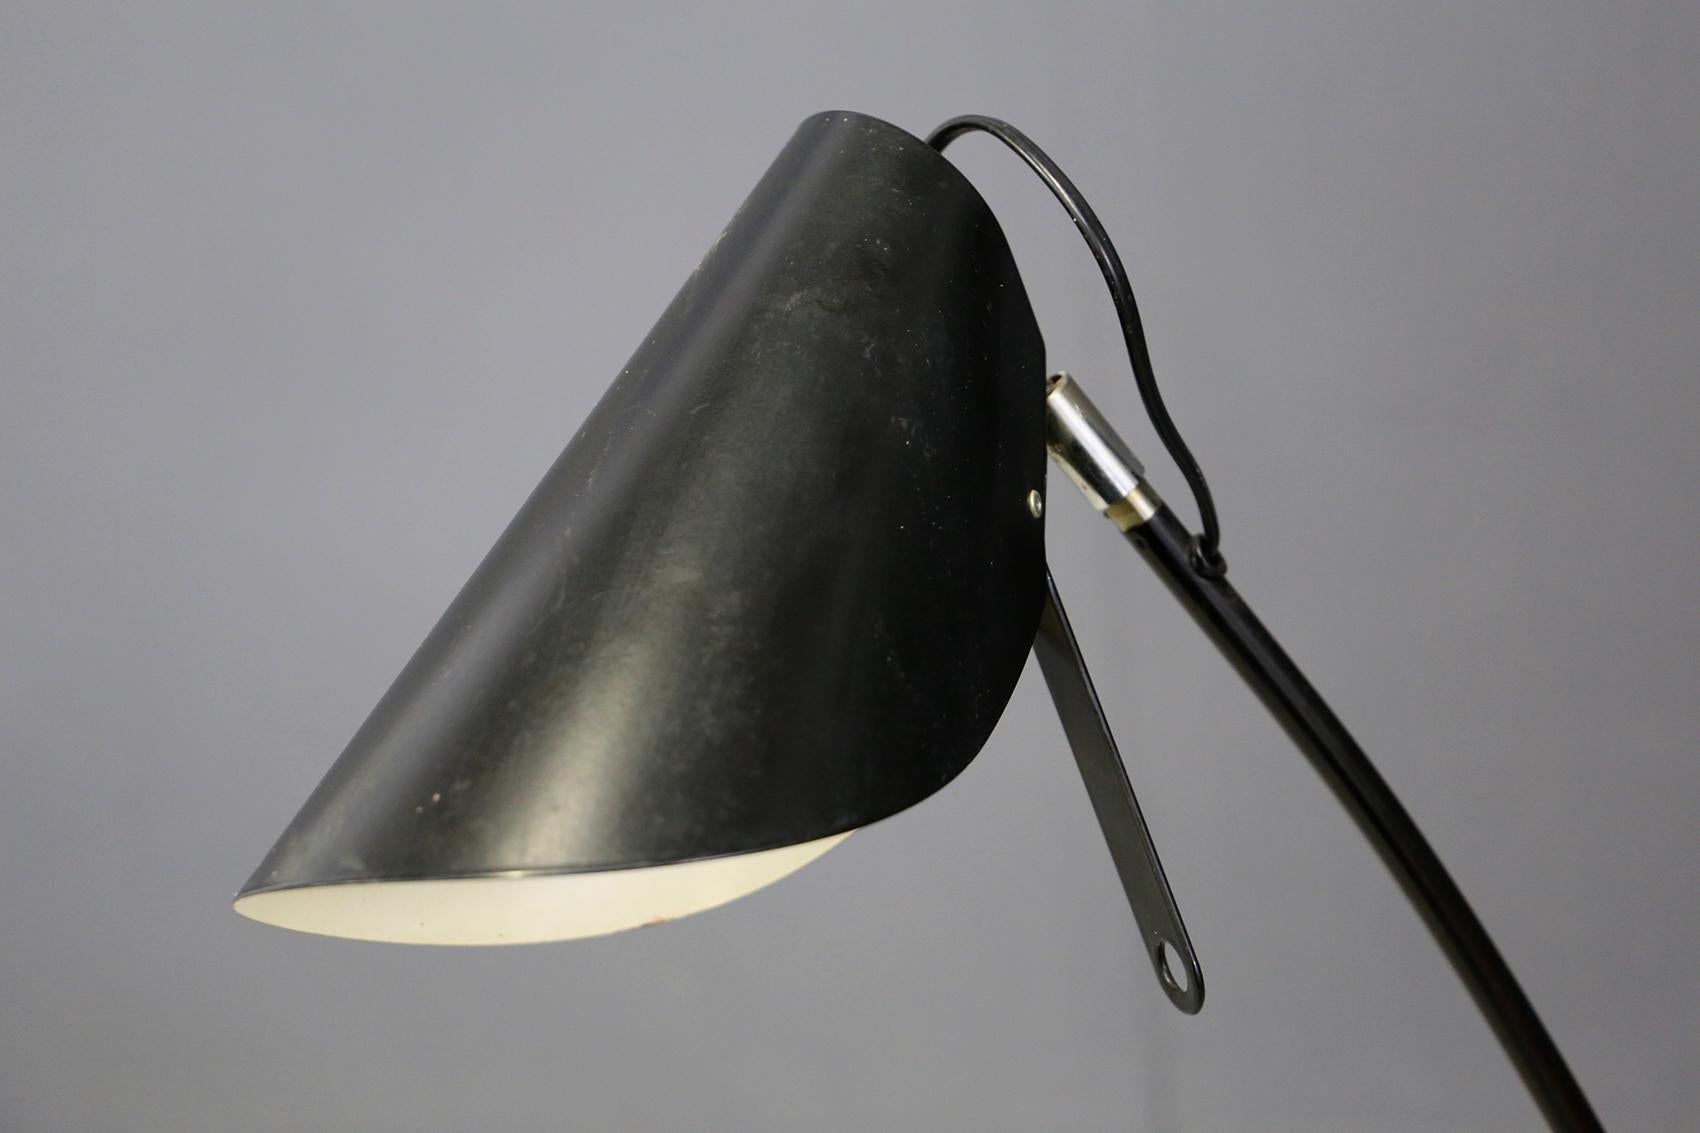 Italian Midcentury Floor Lamp in Black Aluminium and Iron, circa 1960 For Sale 2